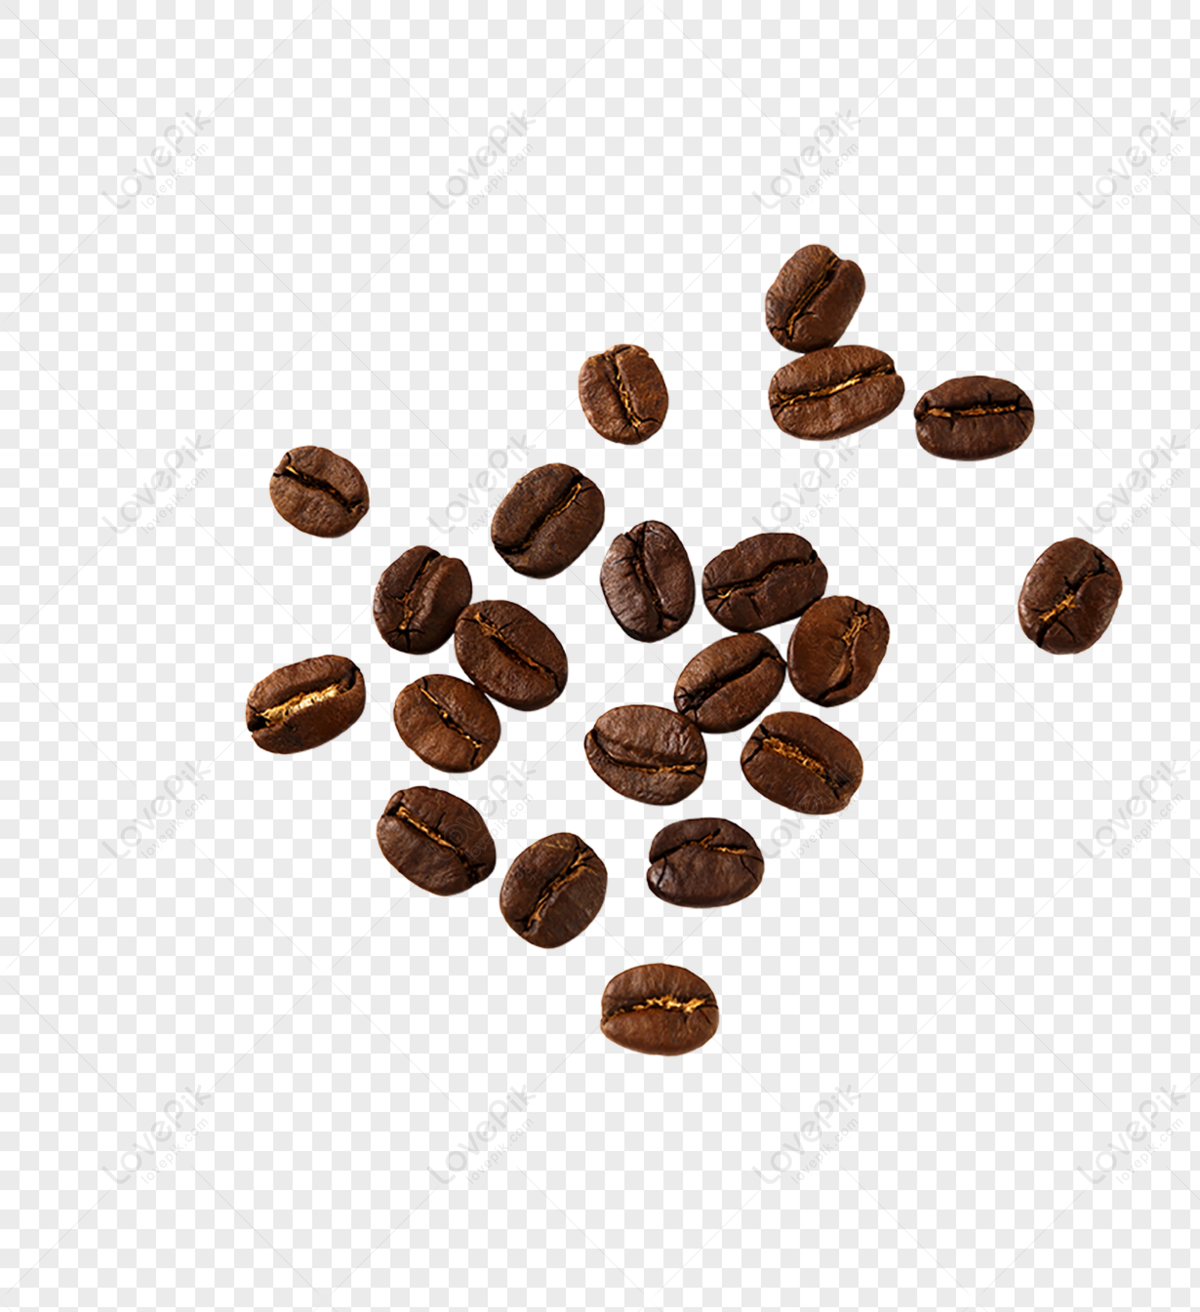 Những hạt cà phê đậm đà, thơm ngon sẽ khiến bạn muốn đắm chìm trong hương vị này mãi mãi. Hãy cùng khám phá hình ảnh liên quan đến những hạt cà phê này nhé!